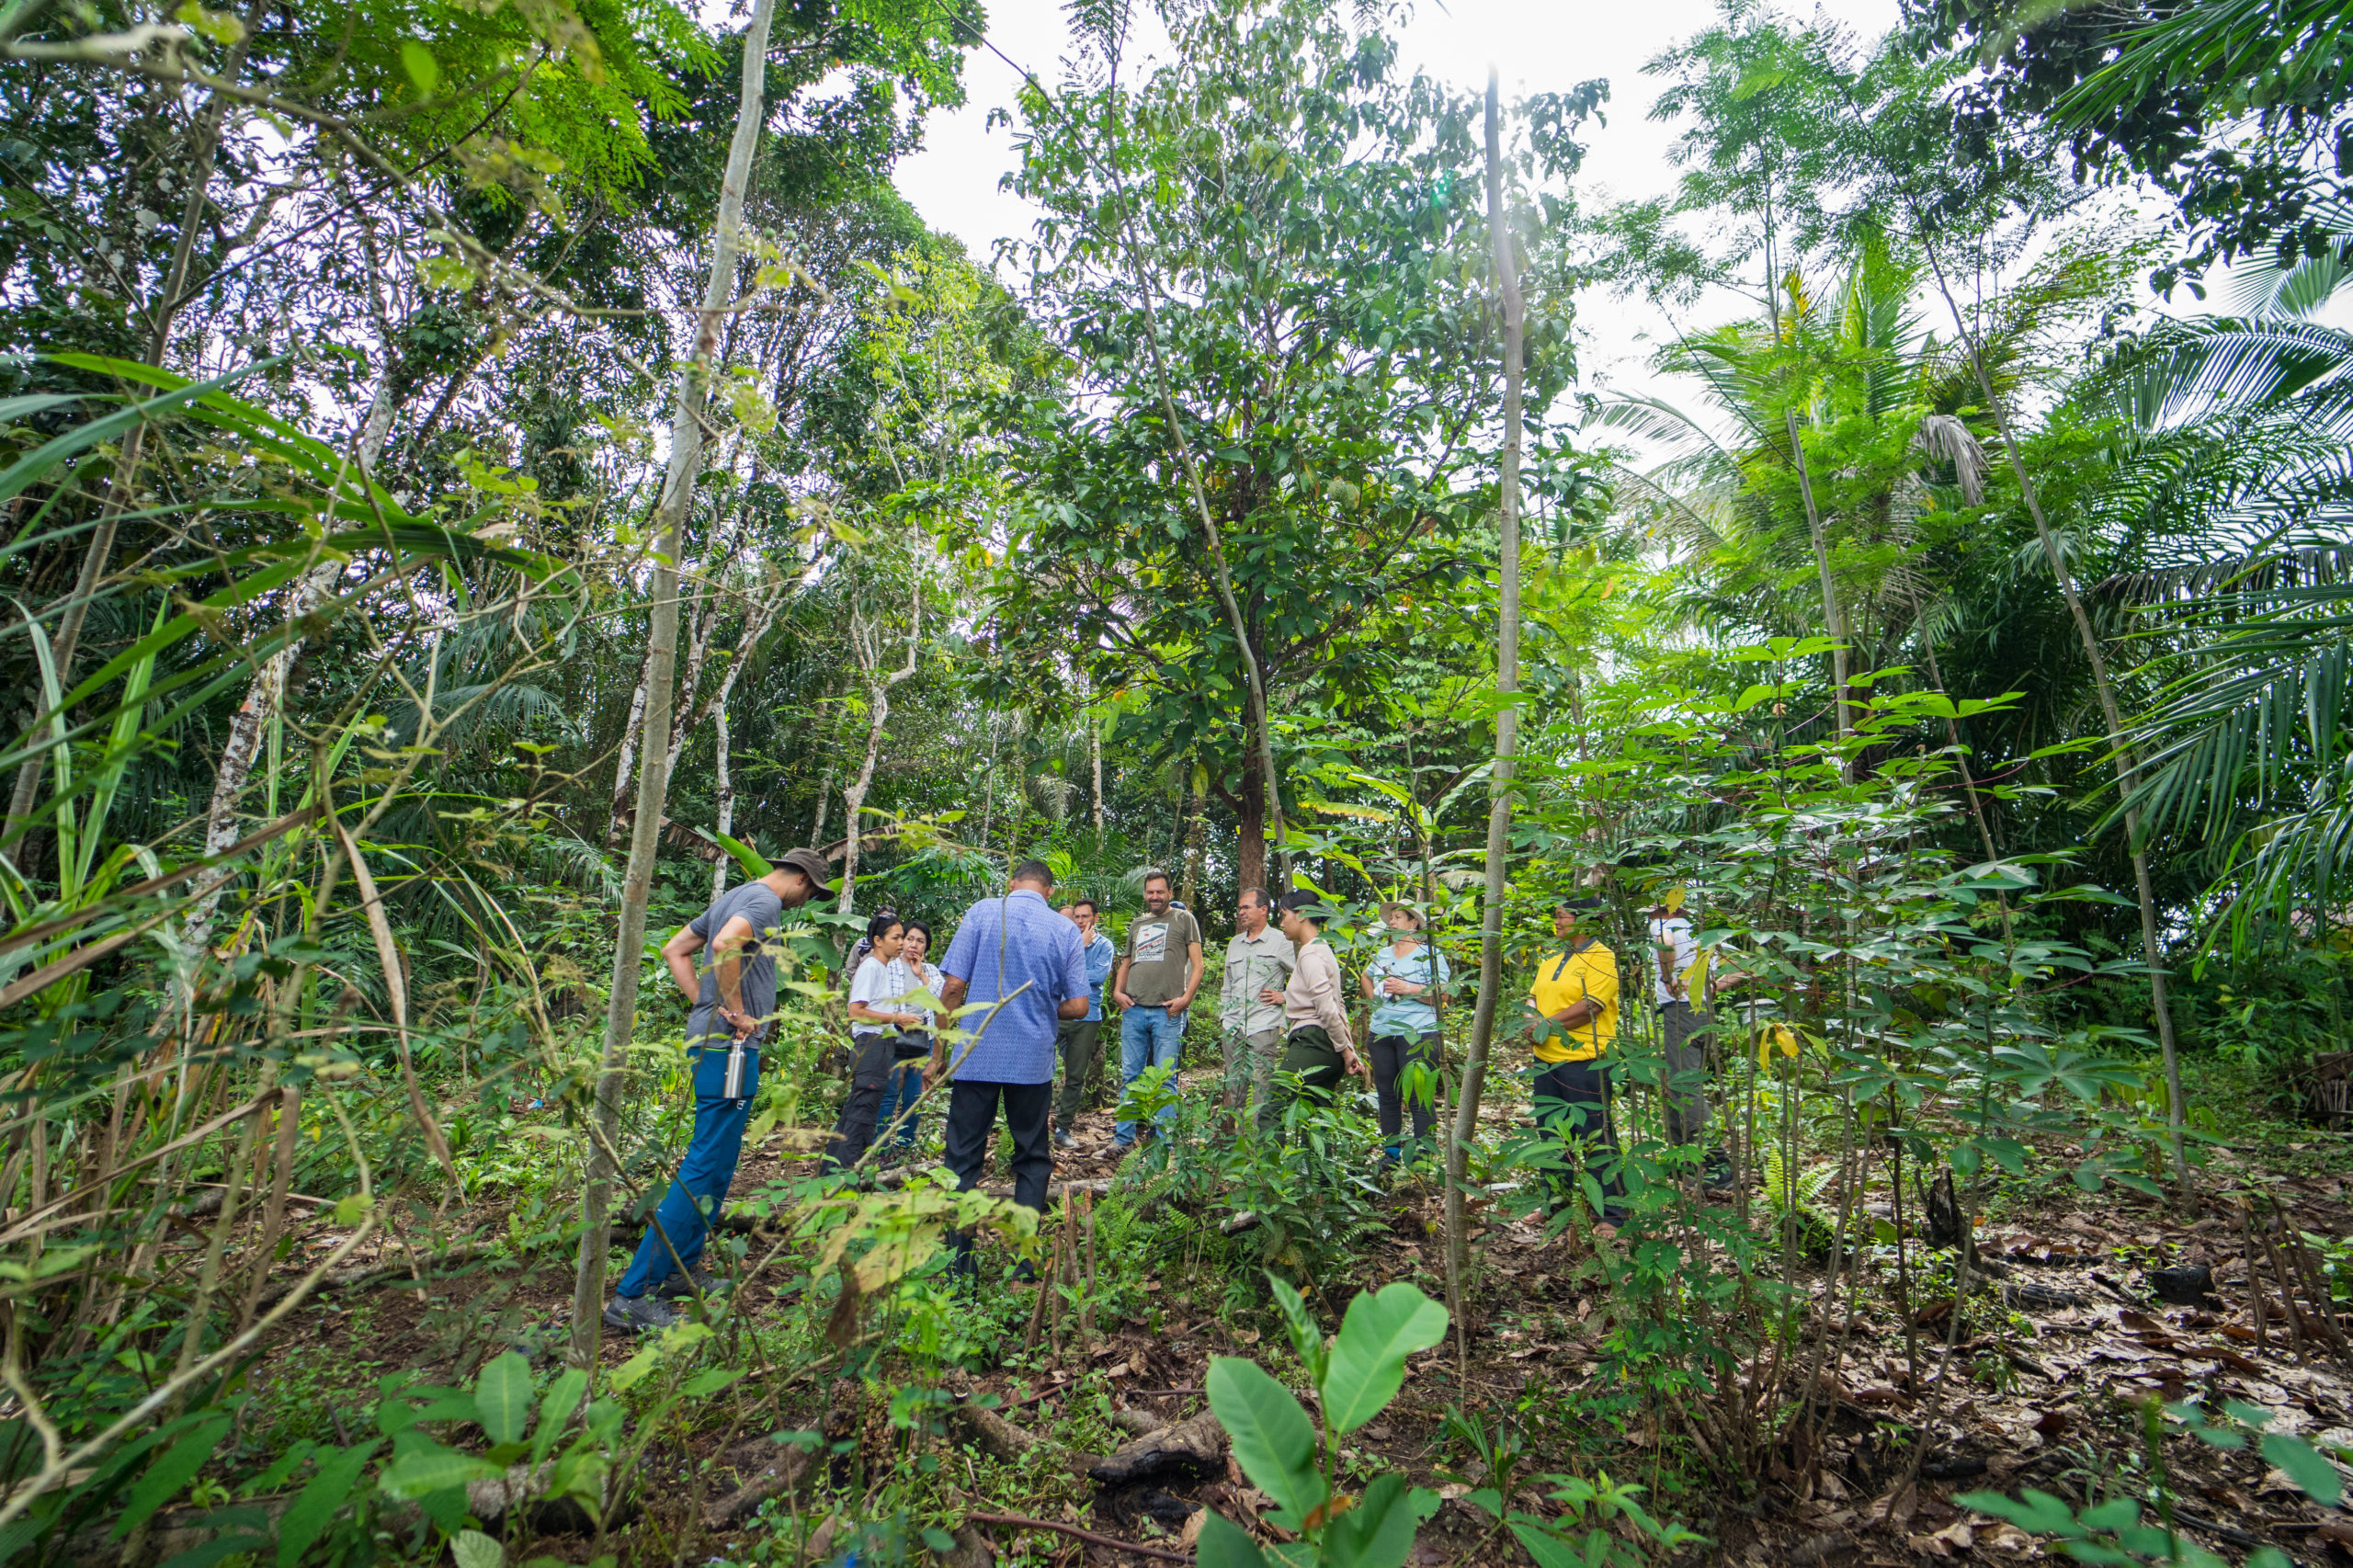 Vertreter von STIHL besuchen gemeinsam mit Mitarbeiterinnen und Mitarbeitern von Fairventures ein Farmer Field in Zentral-Kalimantan, Indonesien.